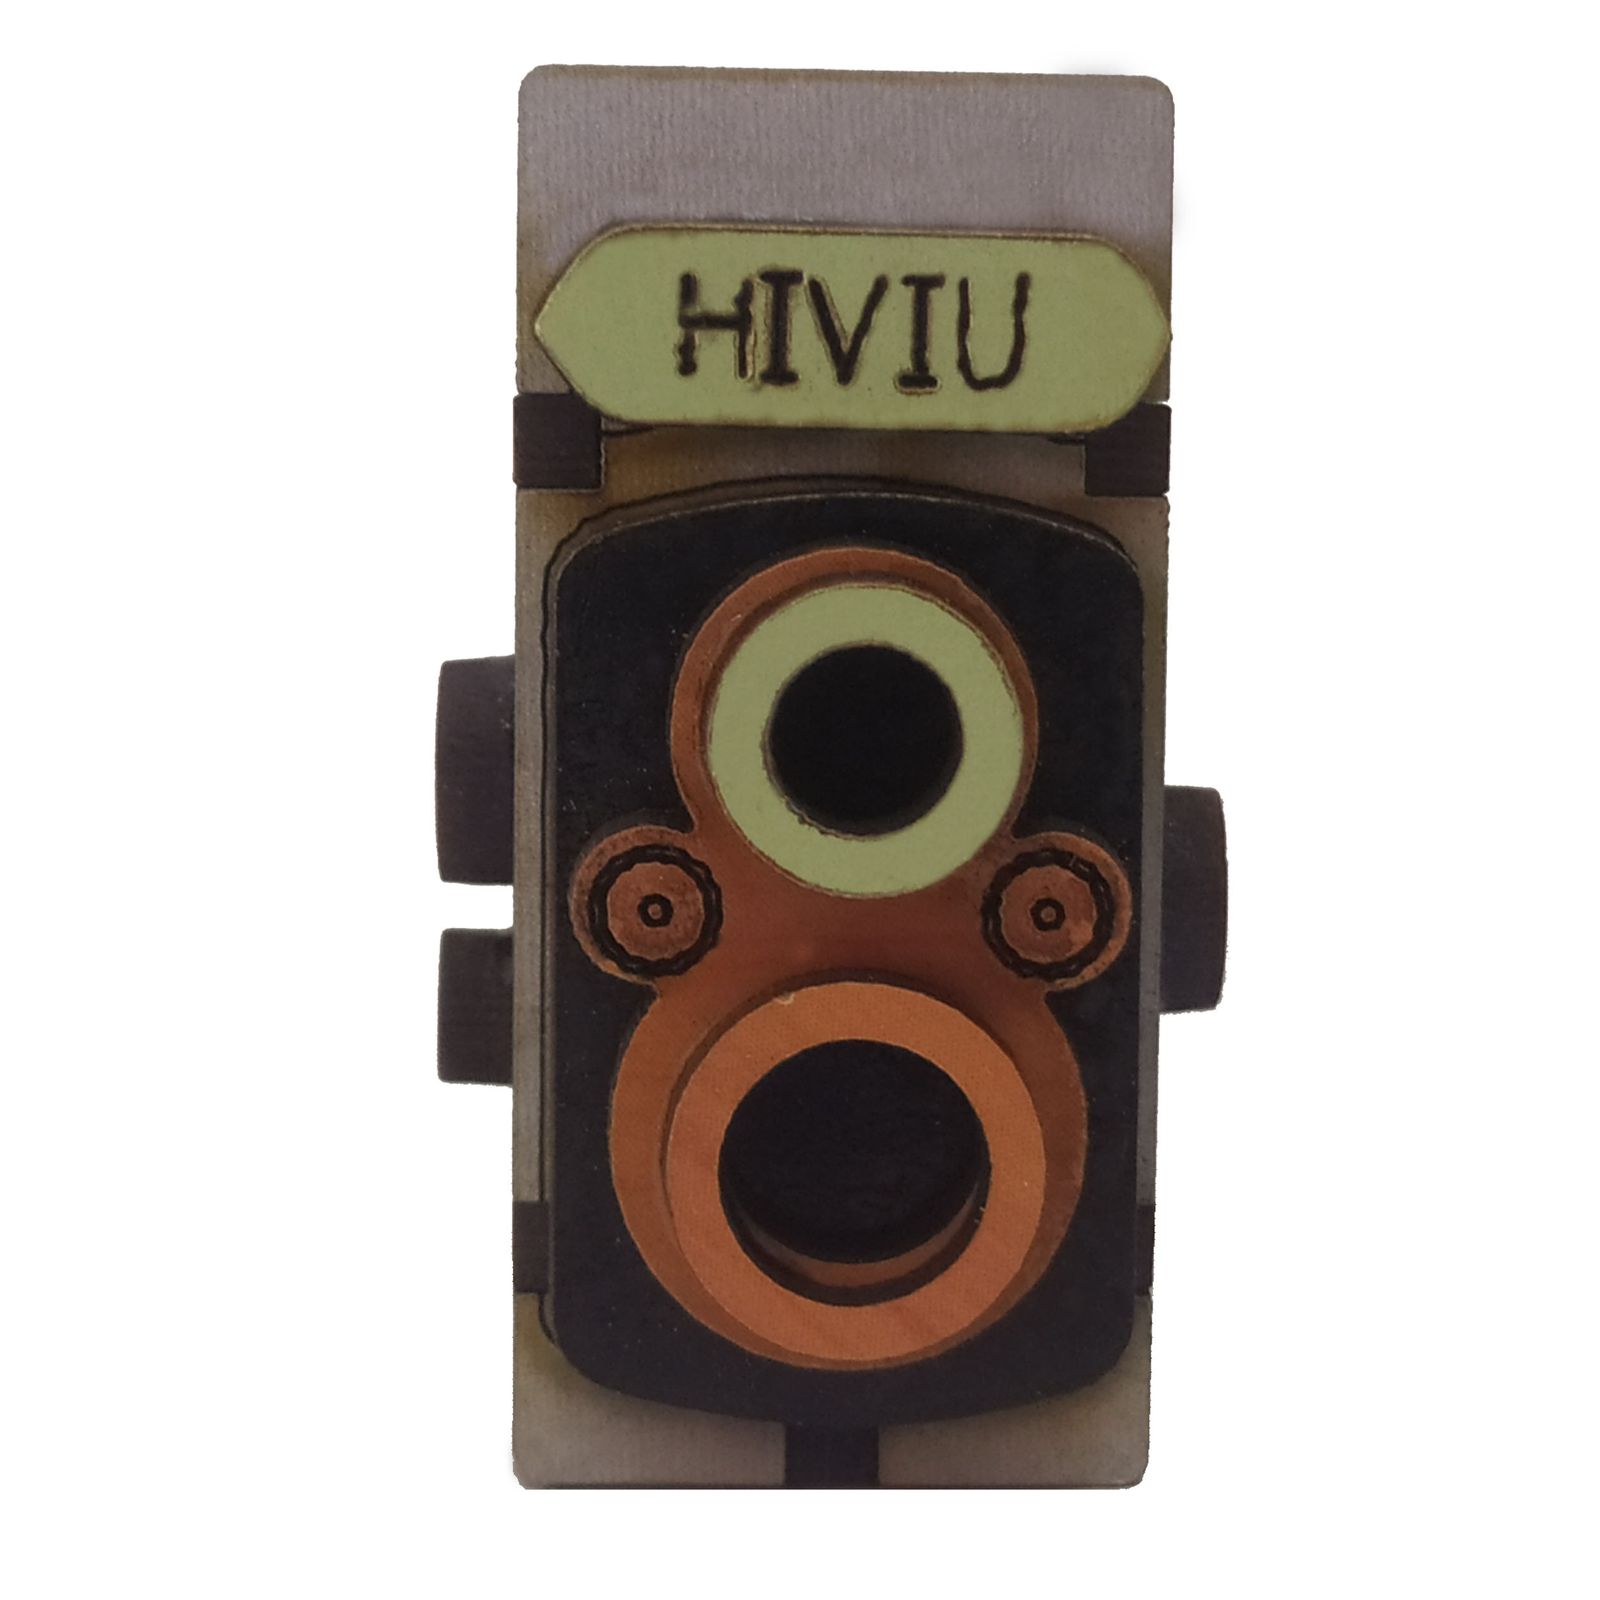 آویز گردنبند طرح دوربین کد hiviu Lu01 -  - 1